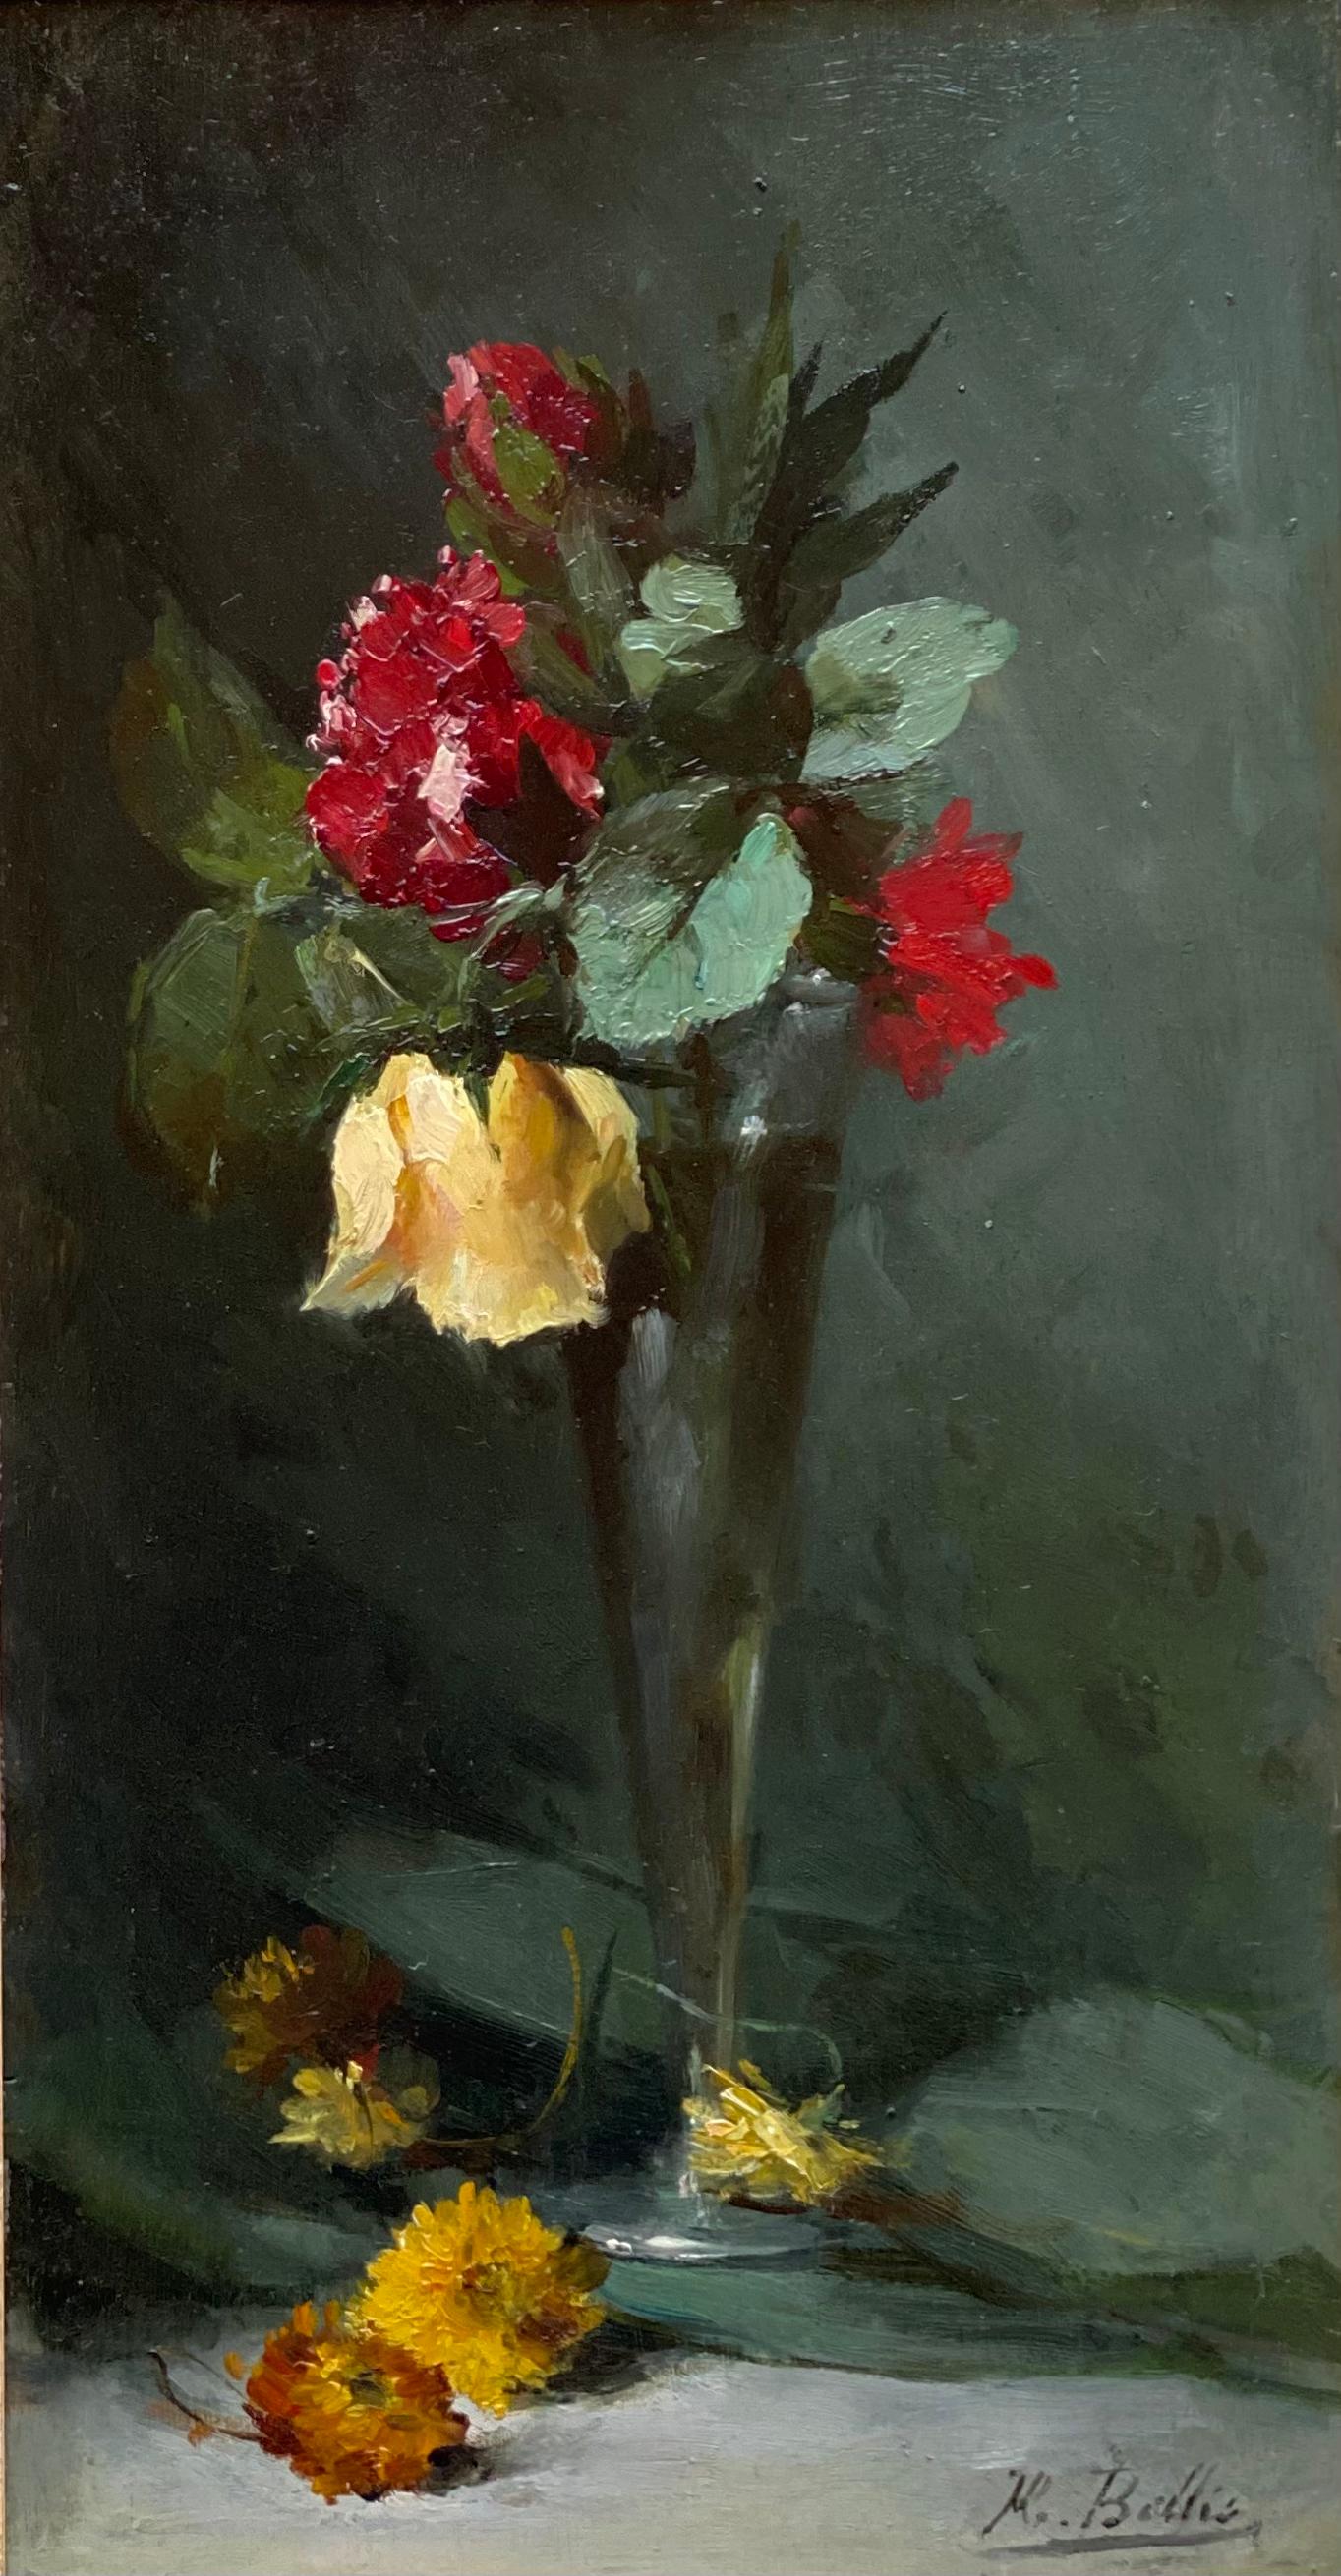   Hubert Bellis, Brüssel 1831 - 1902, belgischer Maler, 